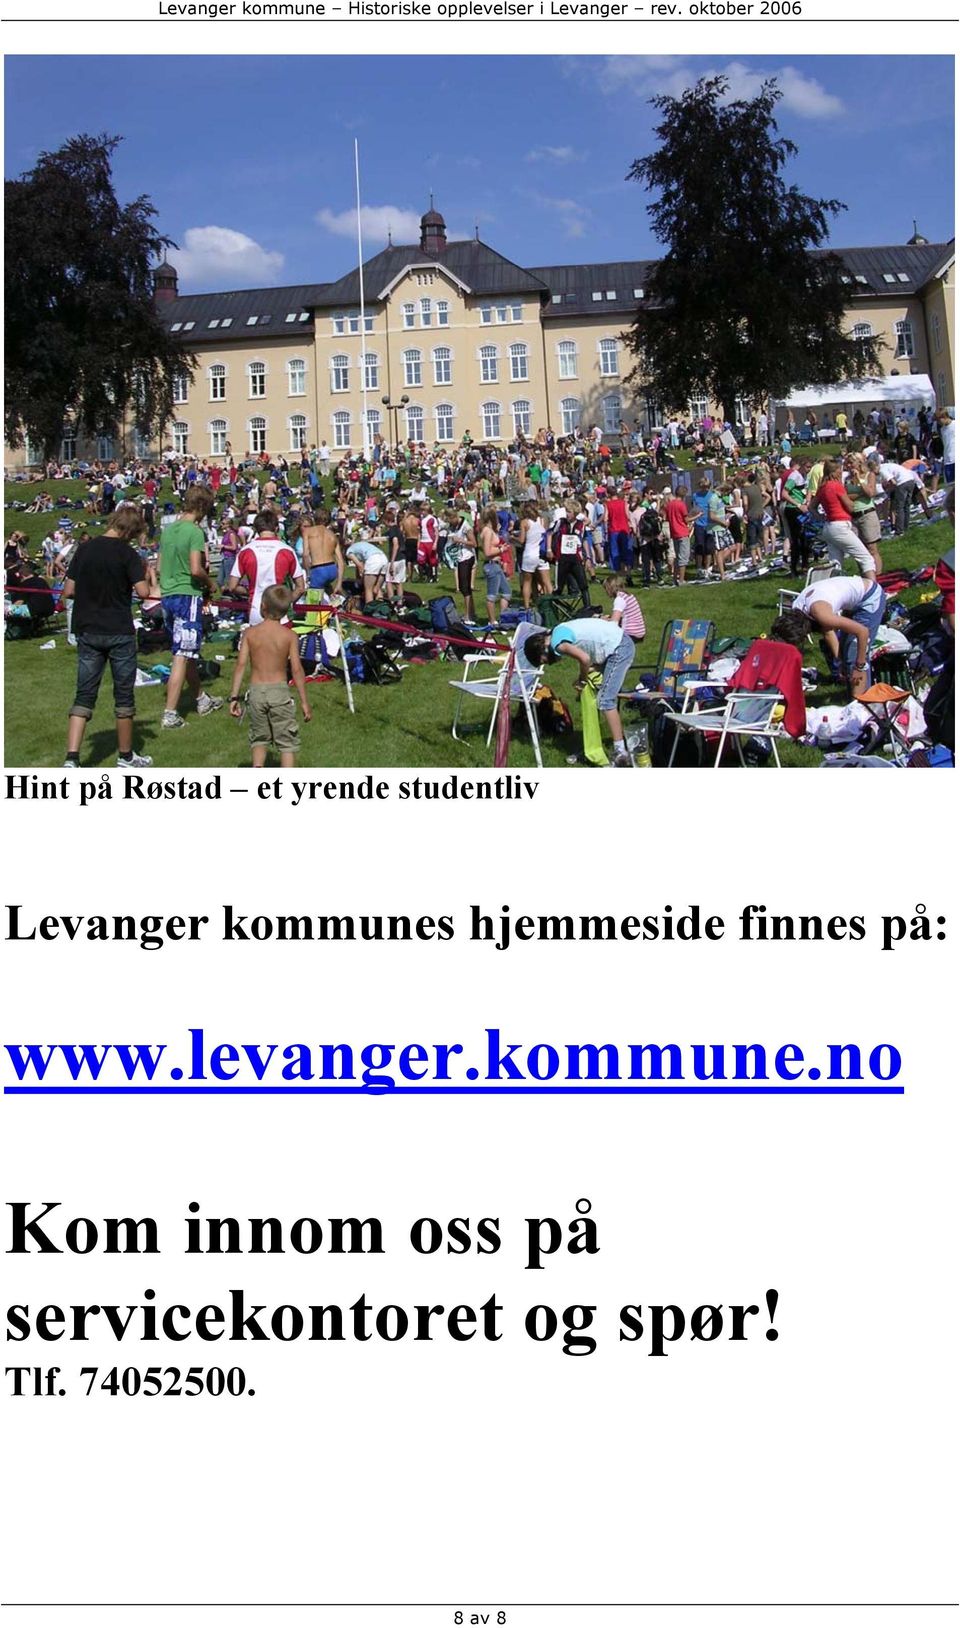 www.levanger.kommune.